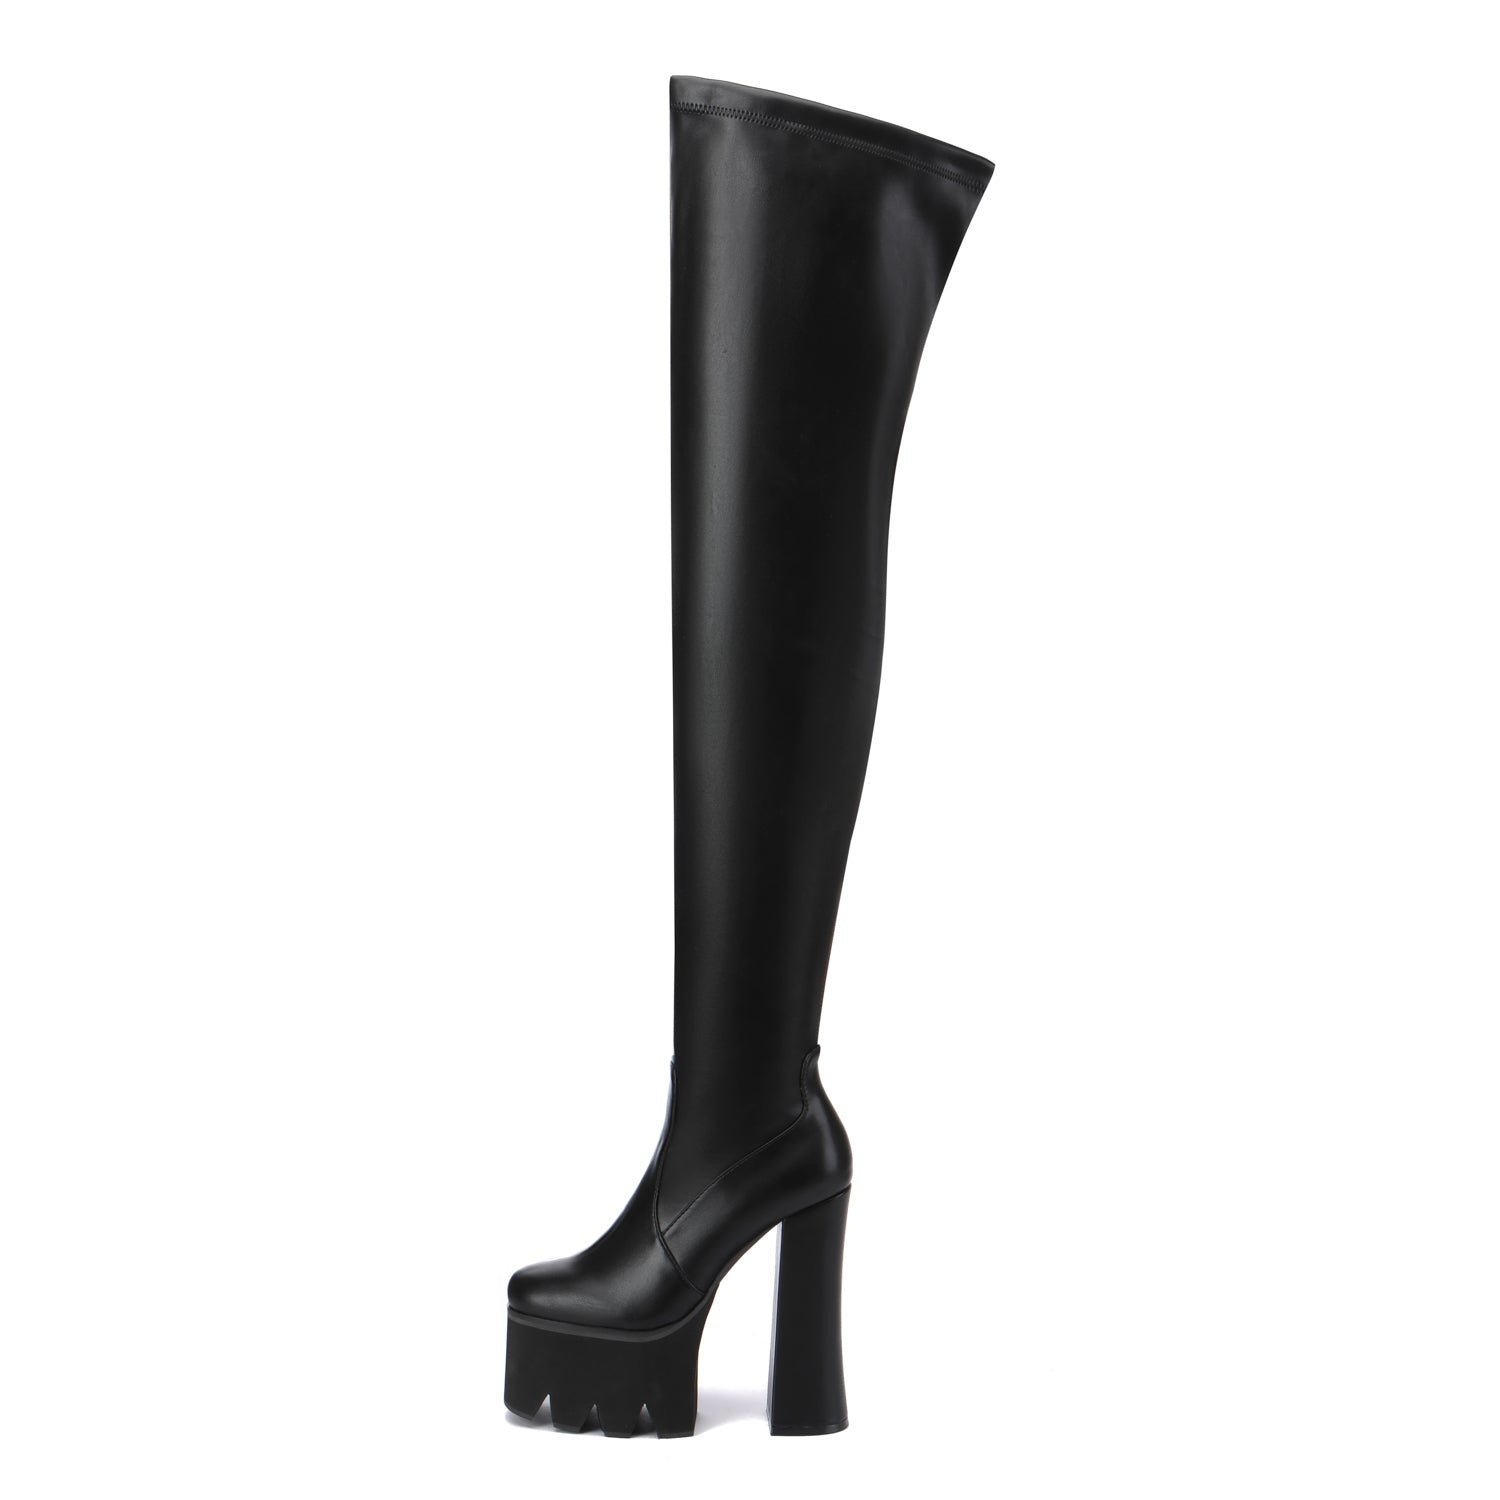 Giaro CAUTION BLACK MATTE - Shoebidoo Shoes | Giaro high heels